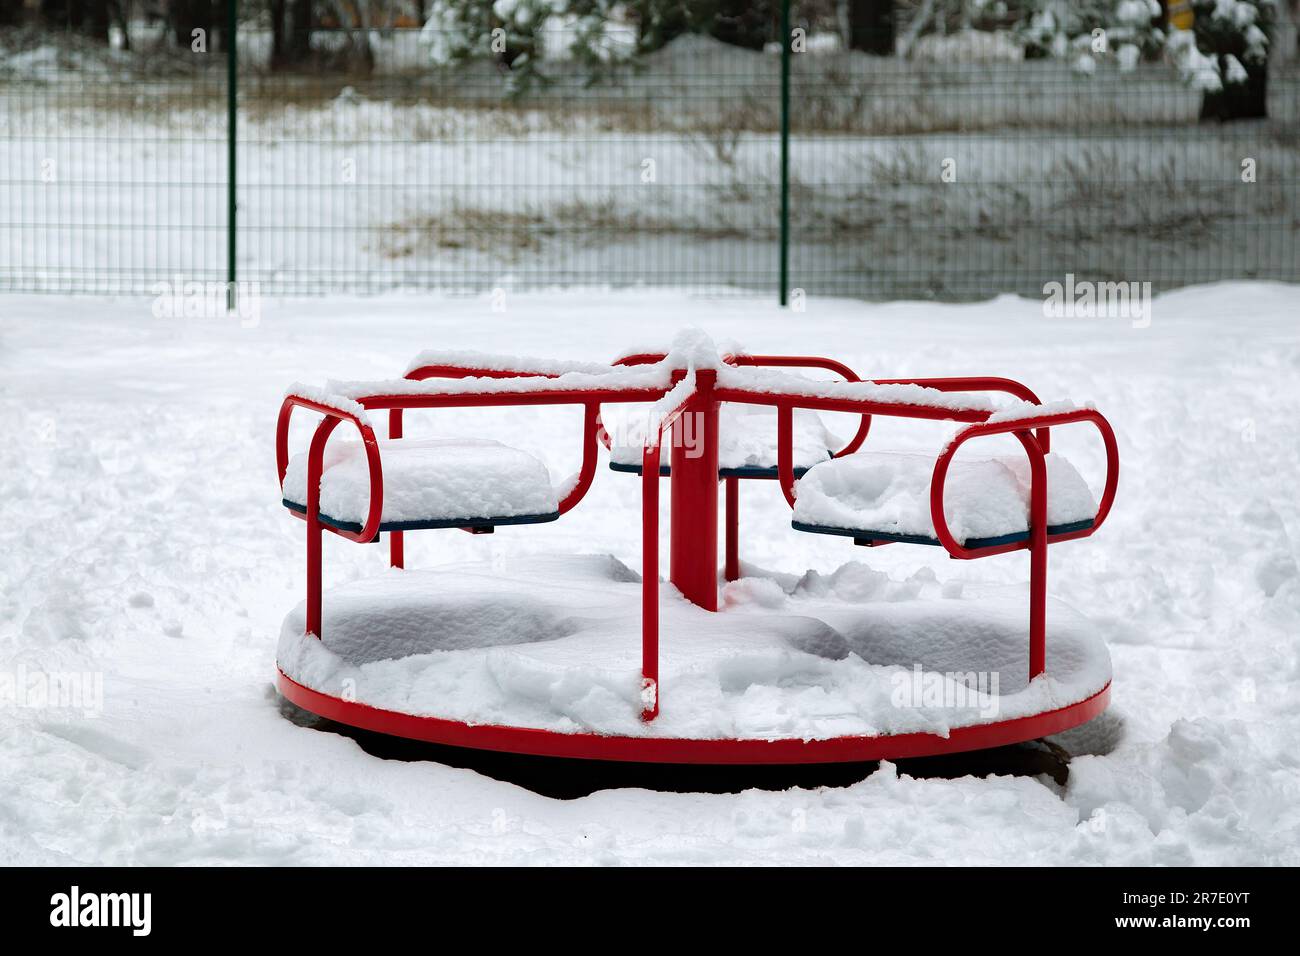 Neige sur une balançoire pour enfants après une forte chute de neige. carrousel pivotant. Scène urbaine de la vie urbaine en hiver dans une tempête de neige. L'hiver sur l'aire de jeux. Jeu Banque D'Images